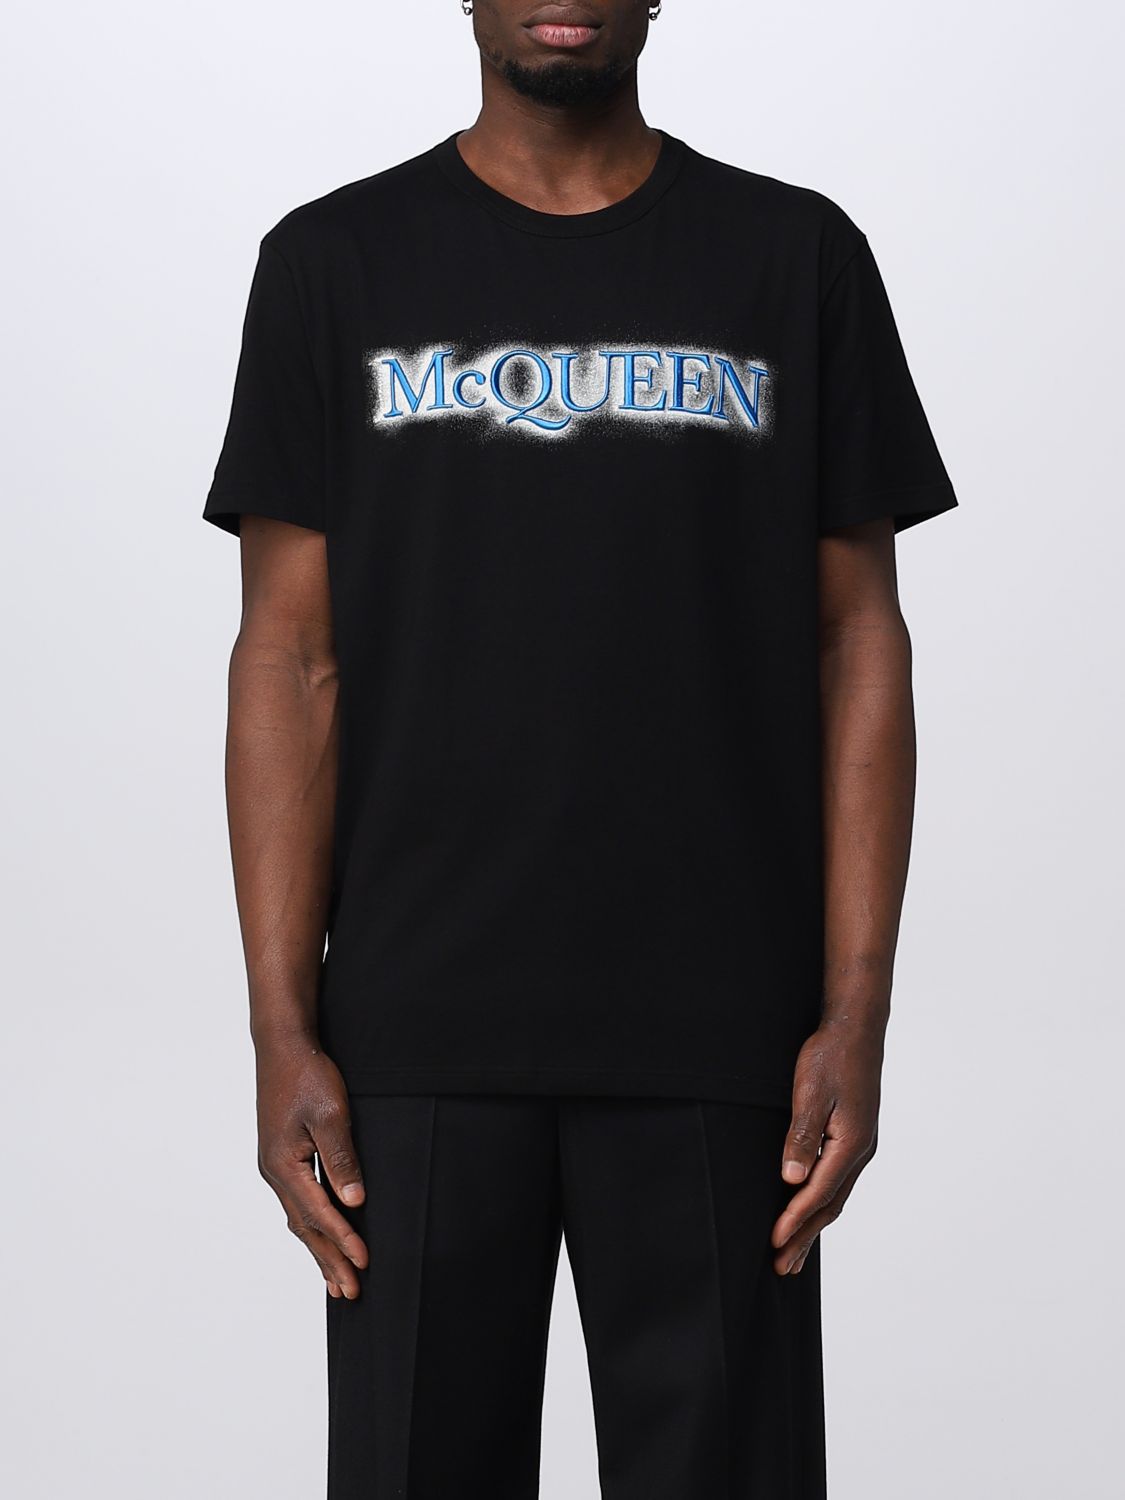 ALEXANDER MCQUEEN T恤 ALEXANDER MCQUEEN 男士 颜色 黑色,D78810002